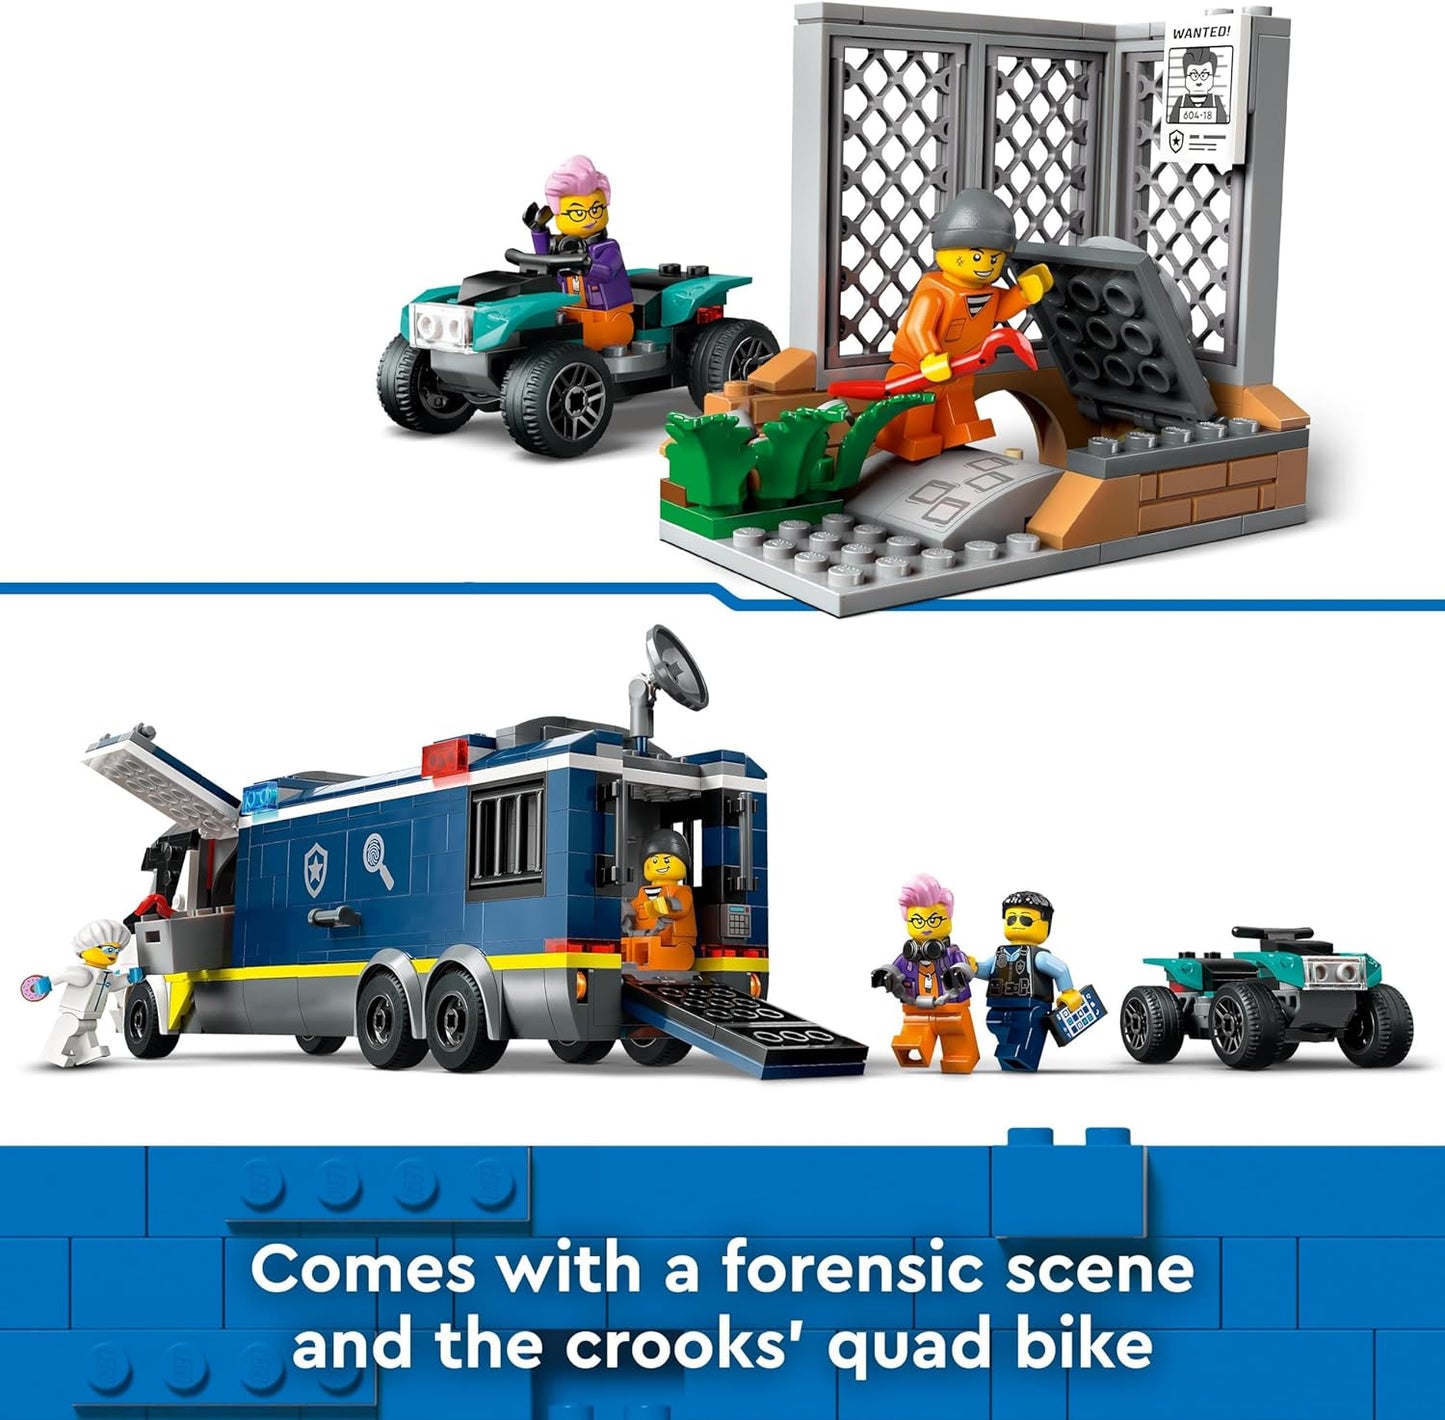 LEGO Brinquedo de caminhão de laboratório criminal móvel da polícia da cidade para meninos, meninas e crianças de 7 anos ou mais, conjunto de veículos com quadriciclo, 2 oficiais, 1 cientista e 2 minifiguras de bandido para brincadeiras